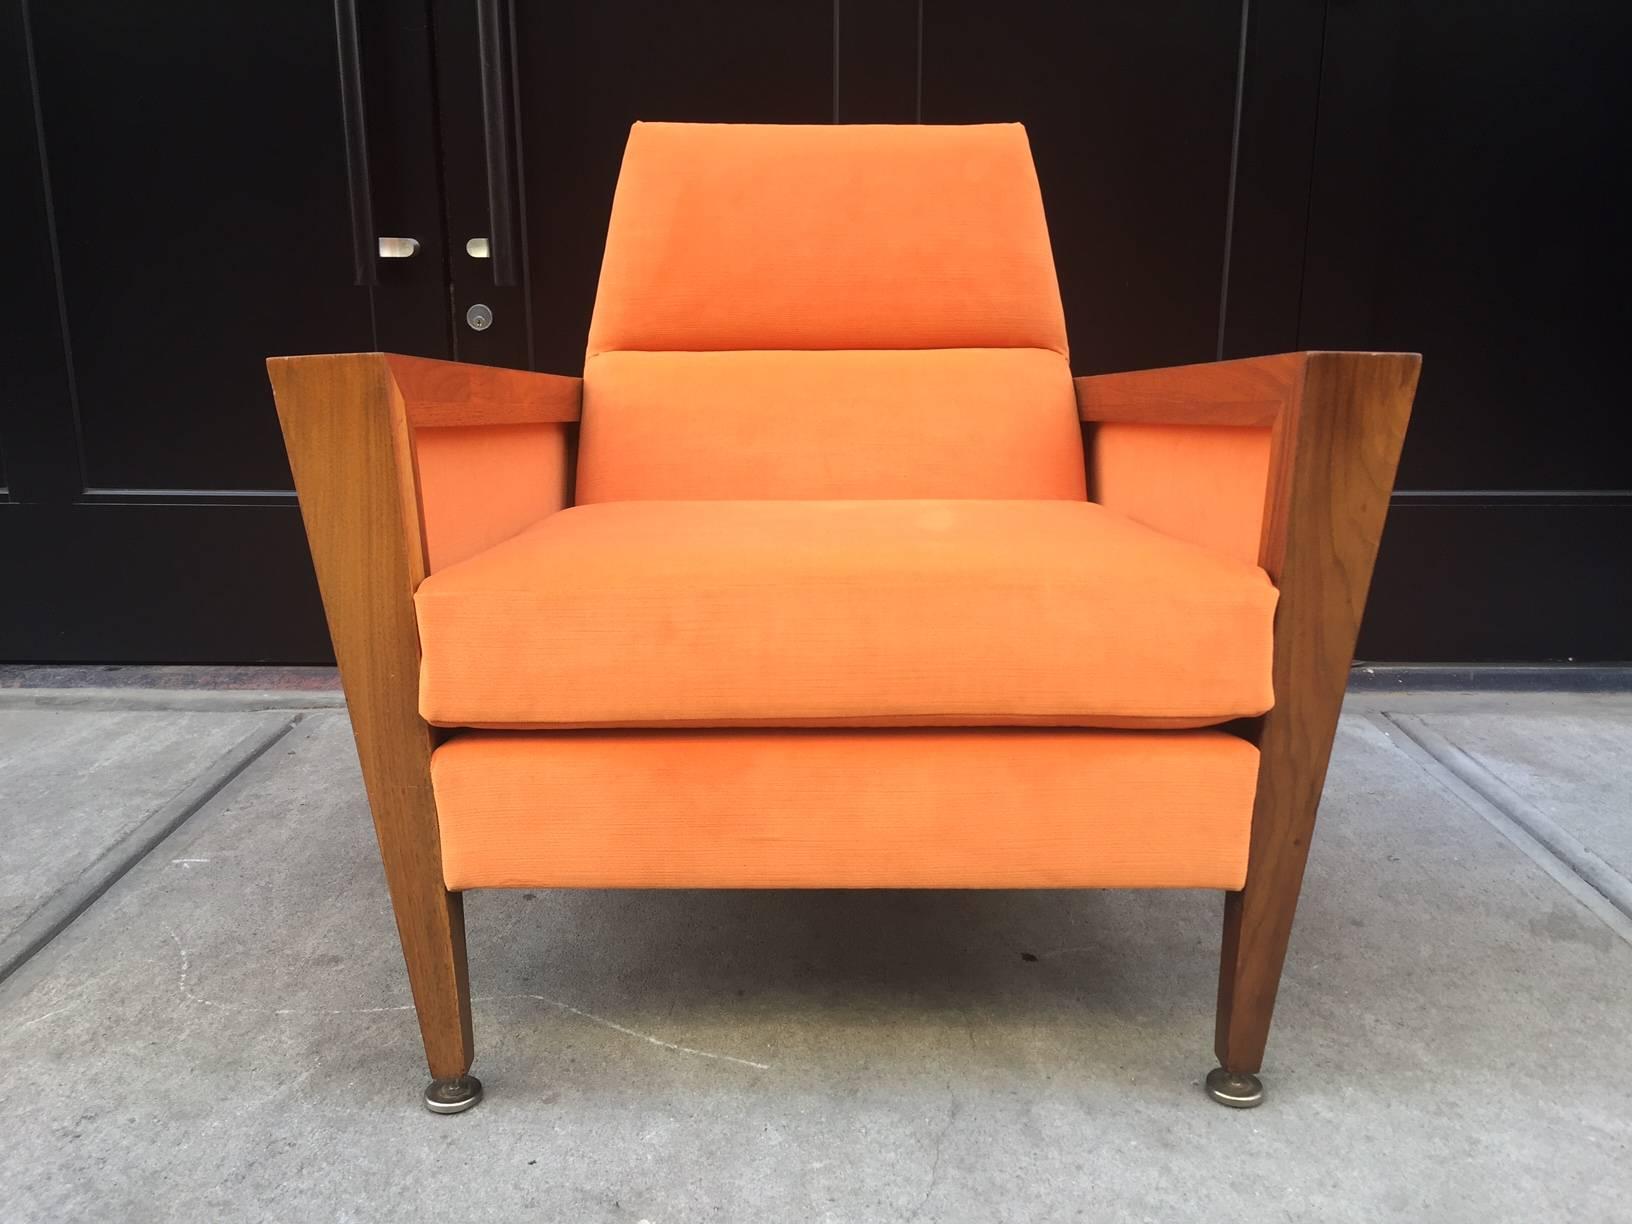 Mid-Century Modern lounge chair manner of Jens Risom. Newly upholstered in orange velvet. Walnut frame.